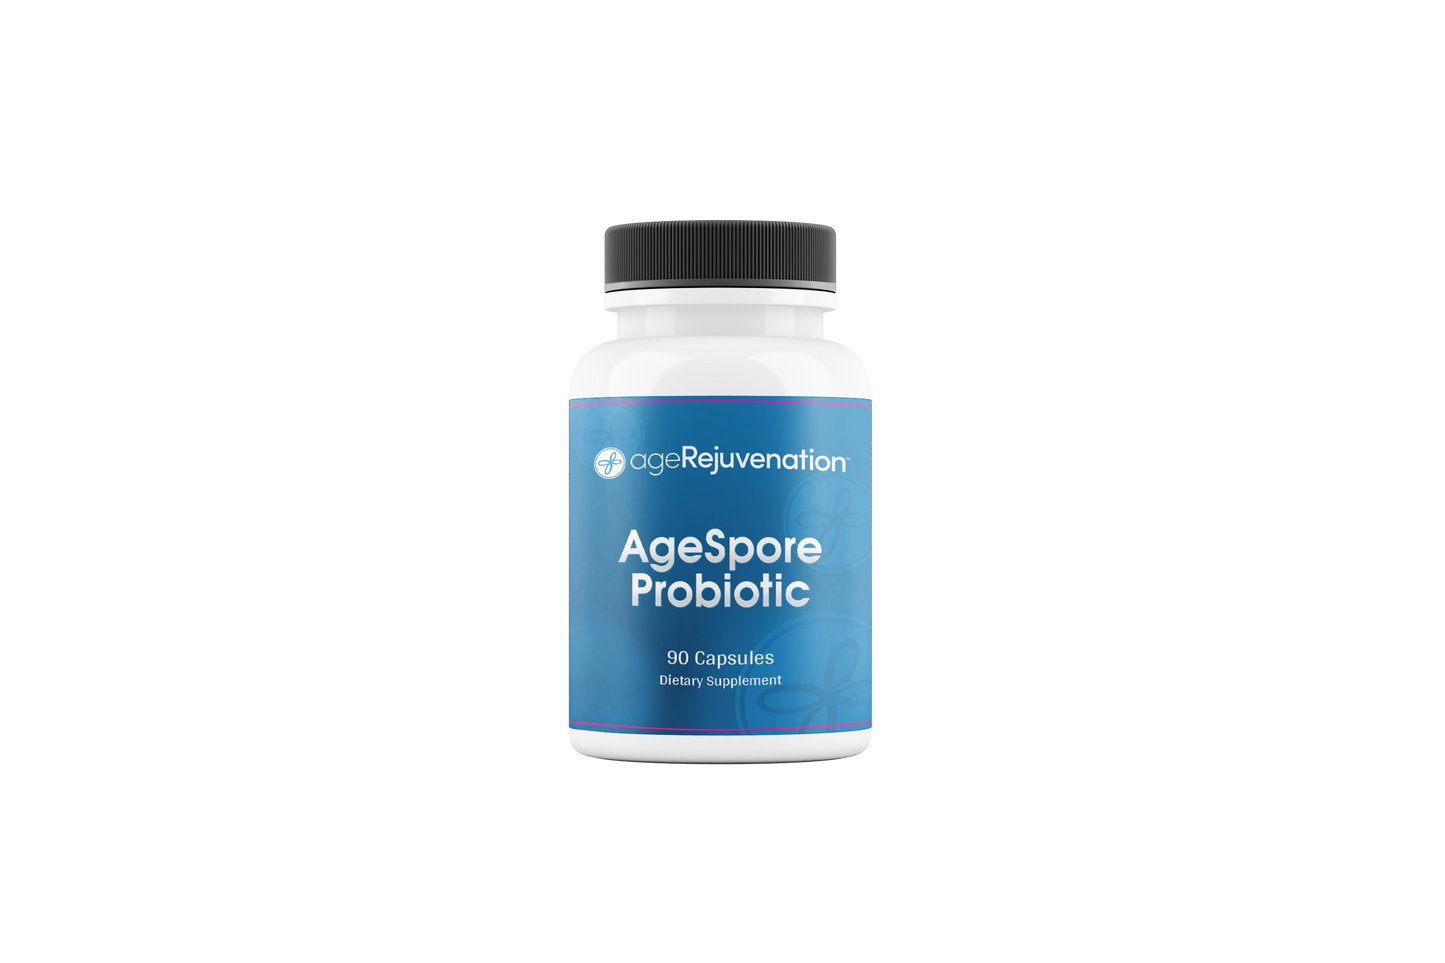 AgeSpore Probiotic